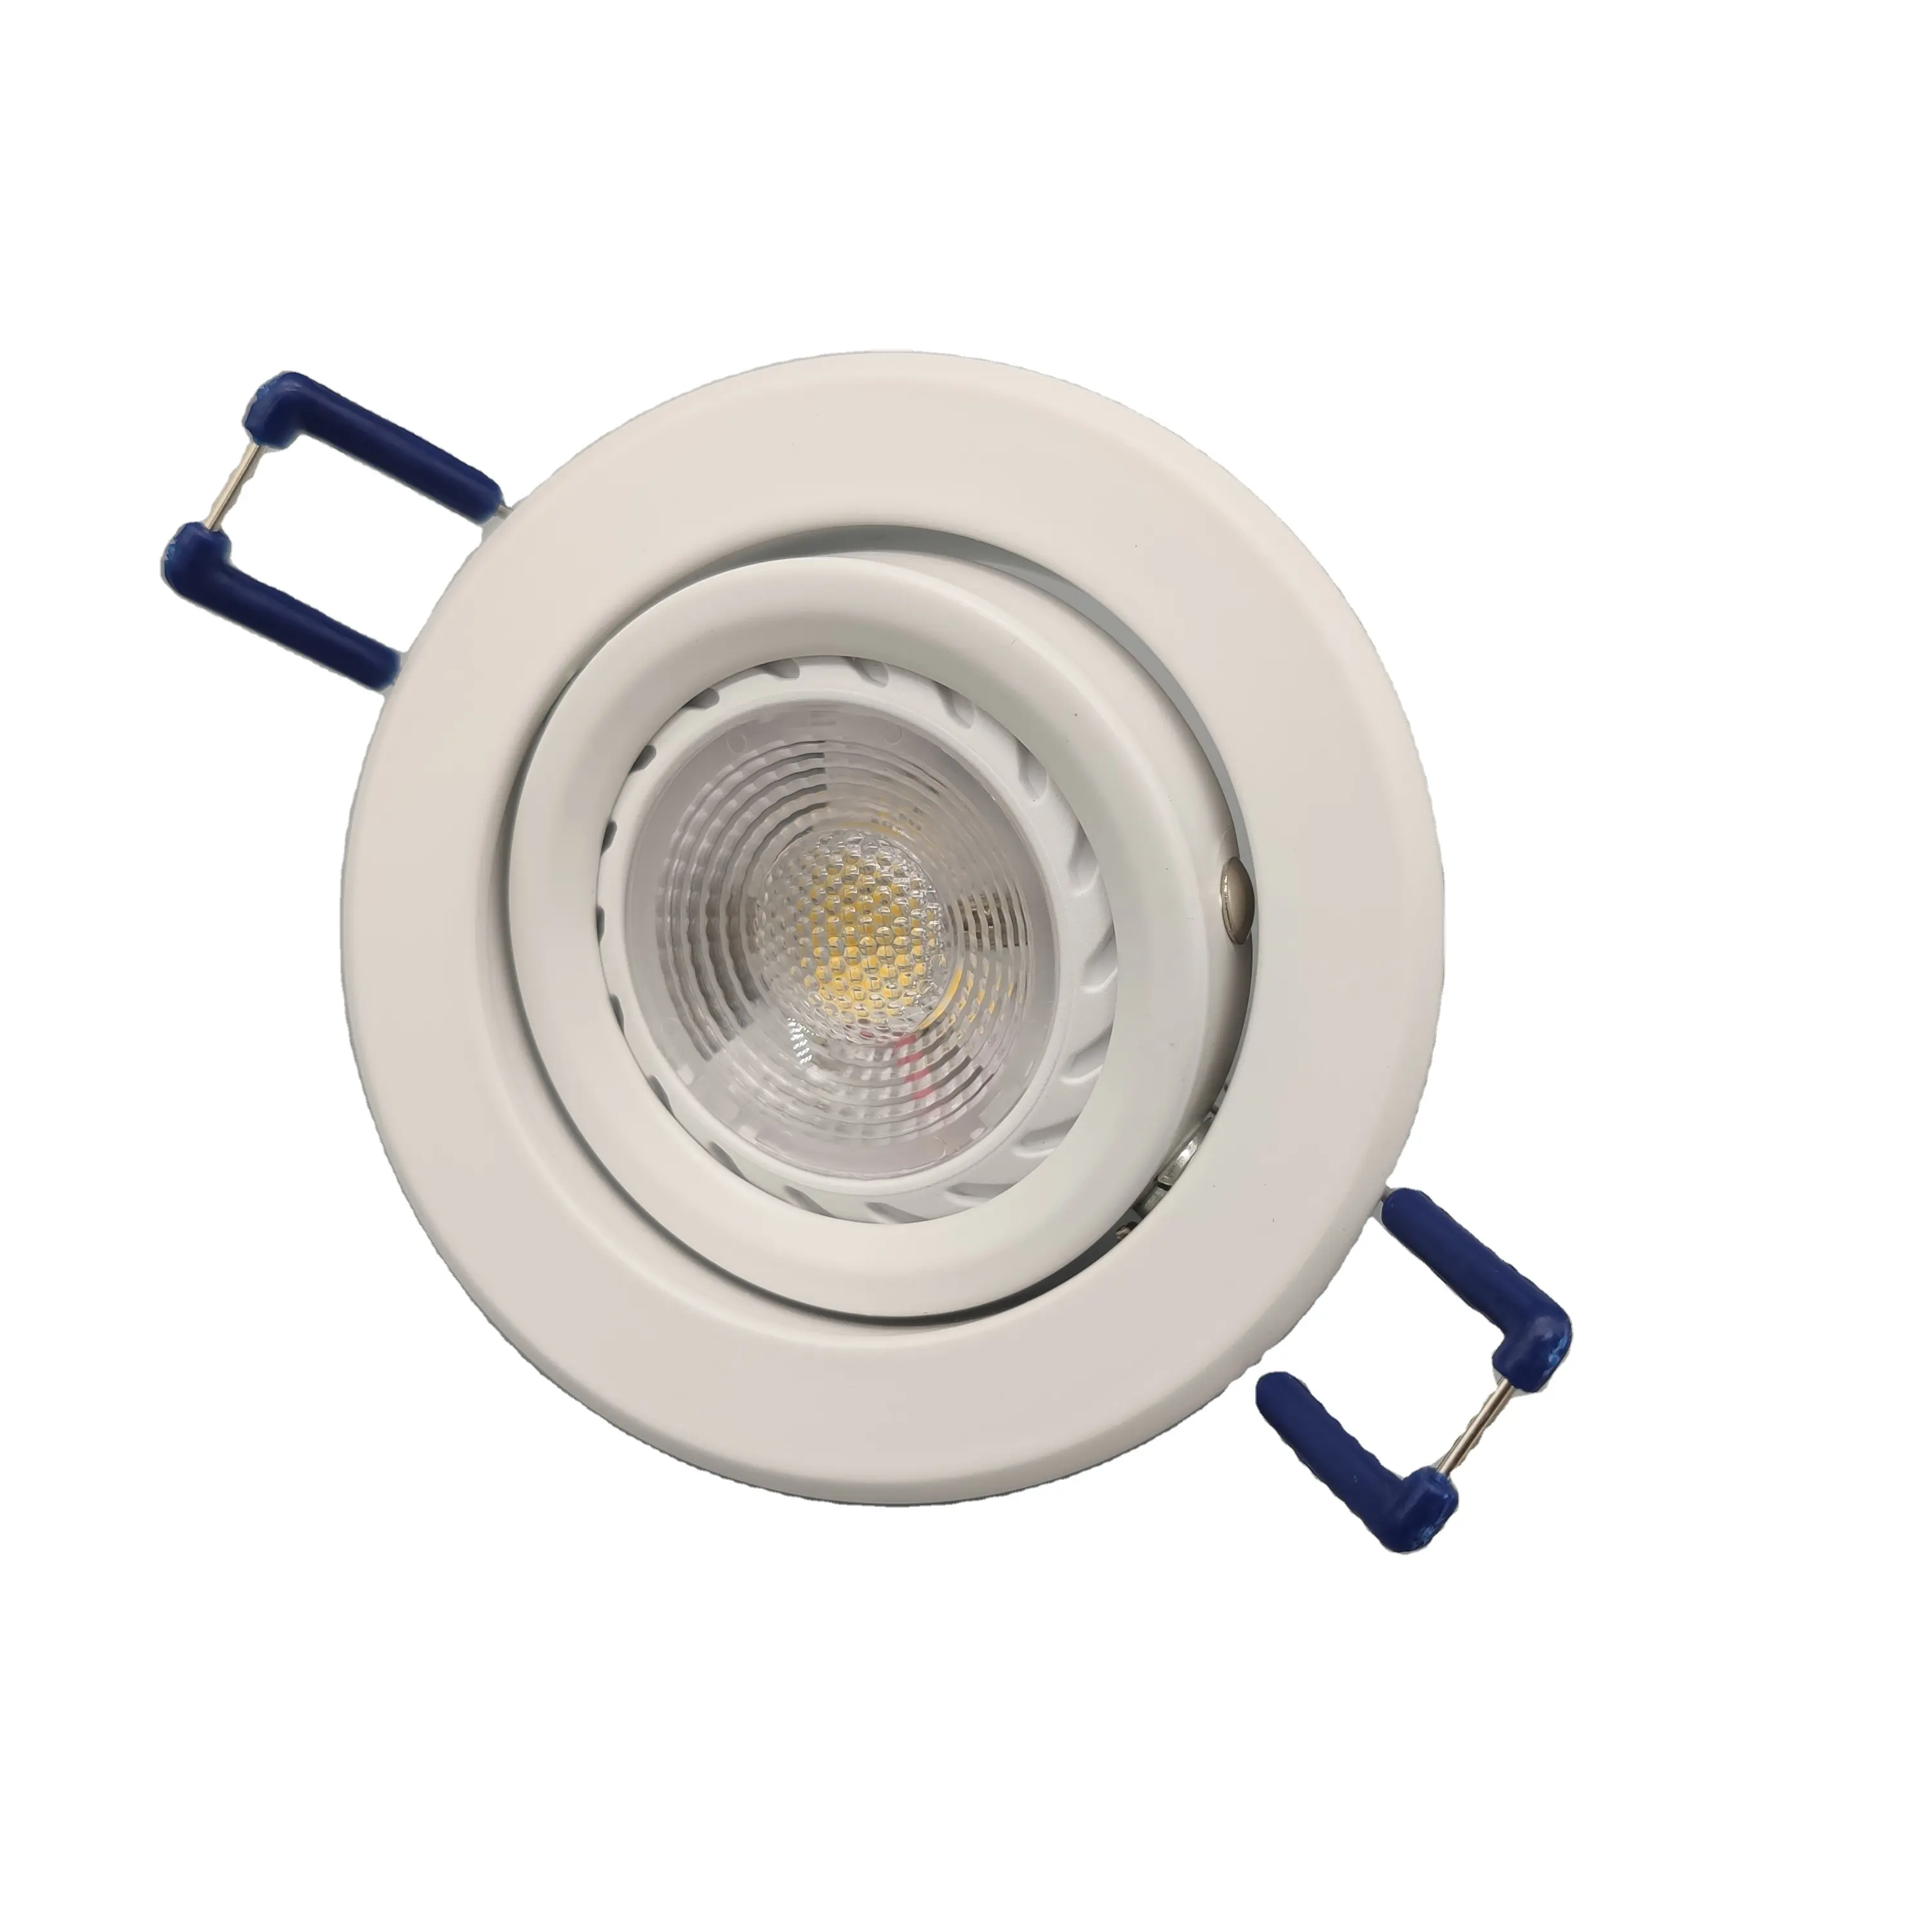 Hot Verkoopt Plafond Spot Light Fittings, Gu10 24V Led Spot Lamp Mr16 Spotlight